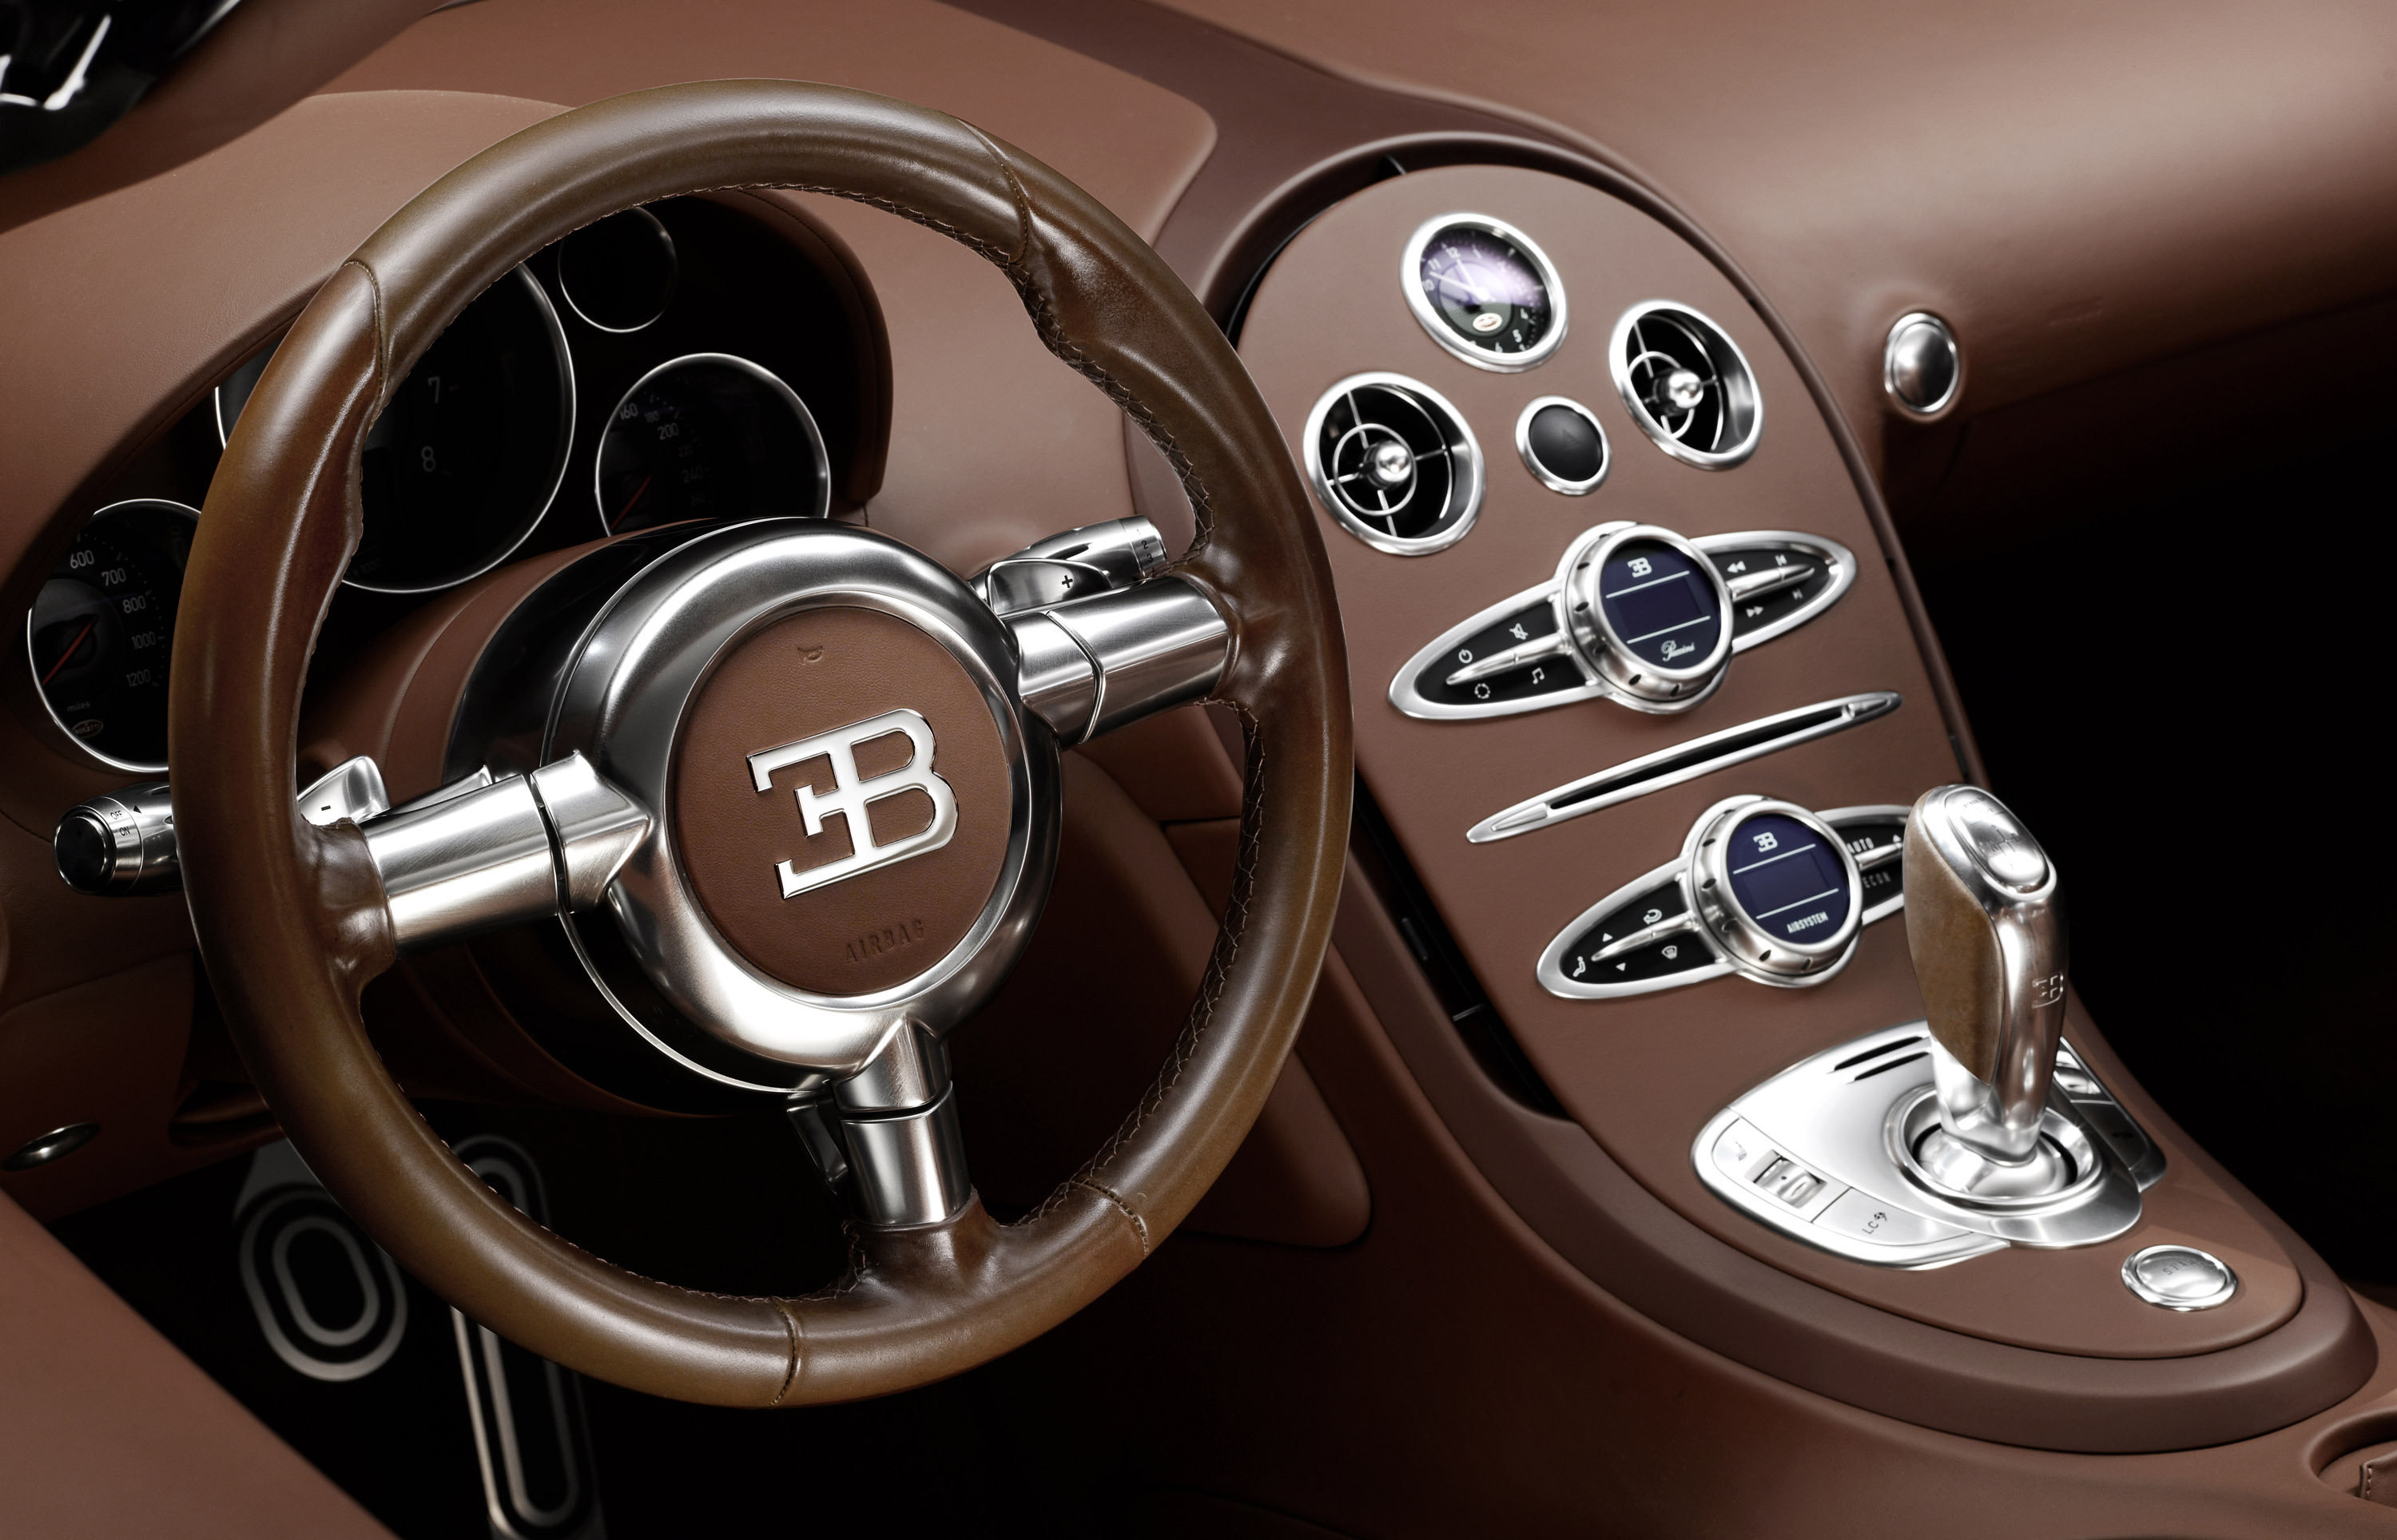 Ettore Bugatti Veyron